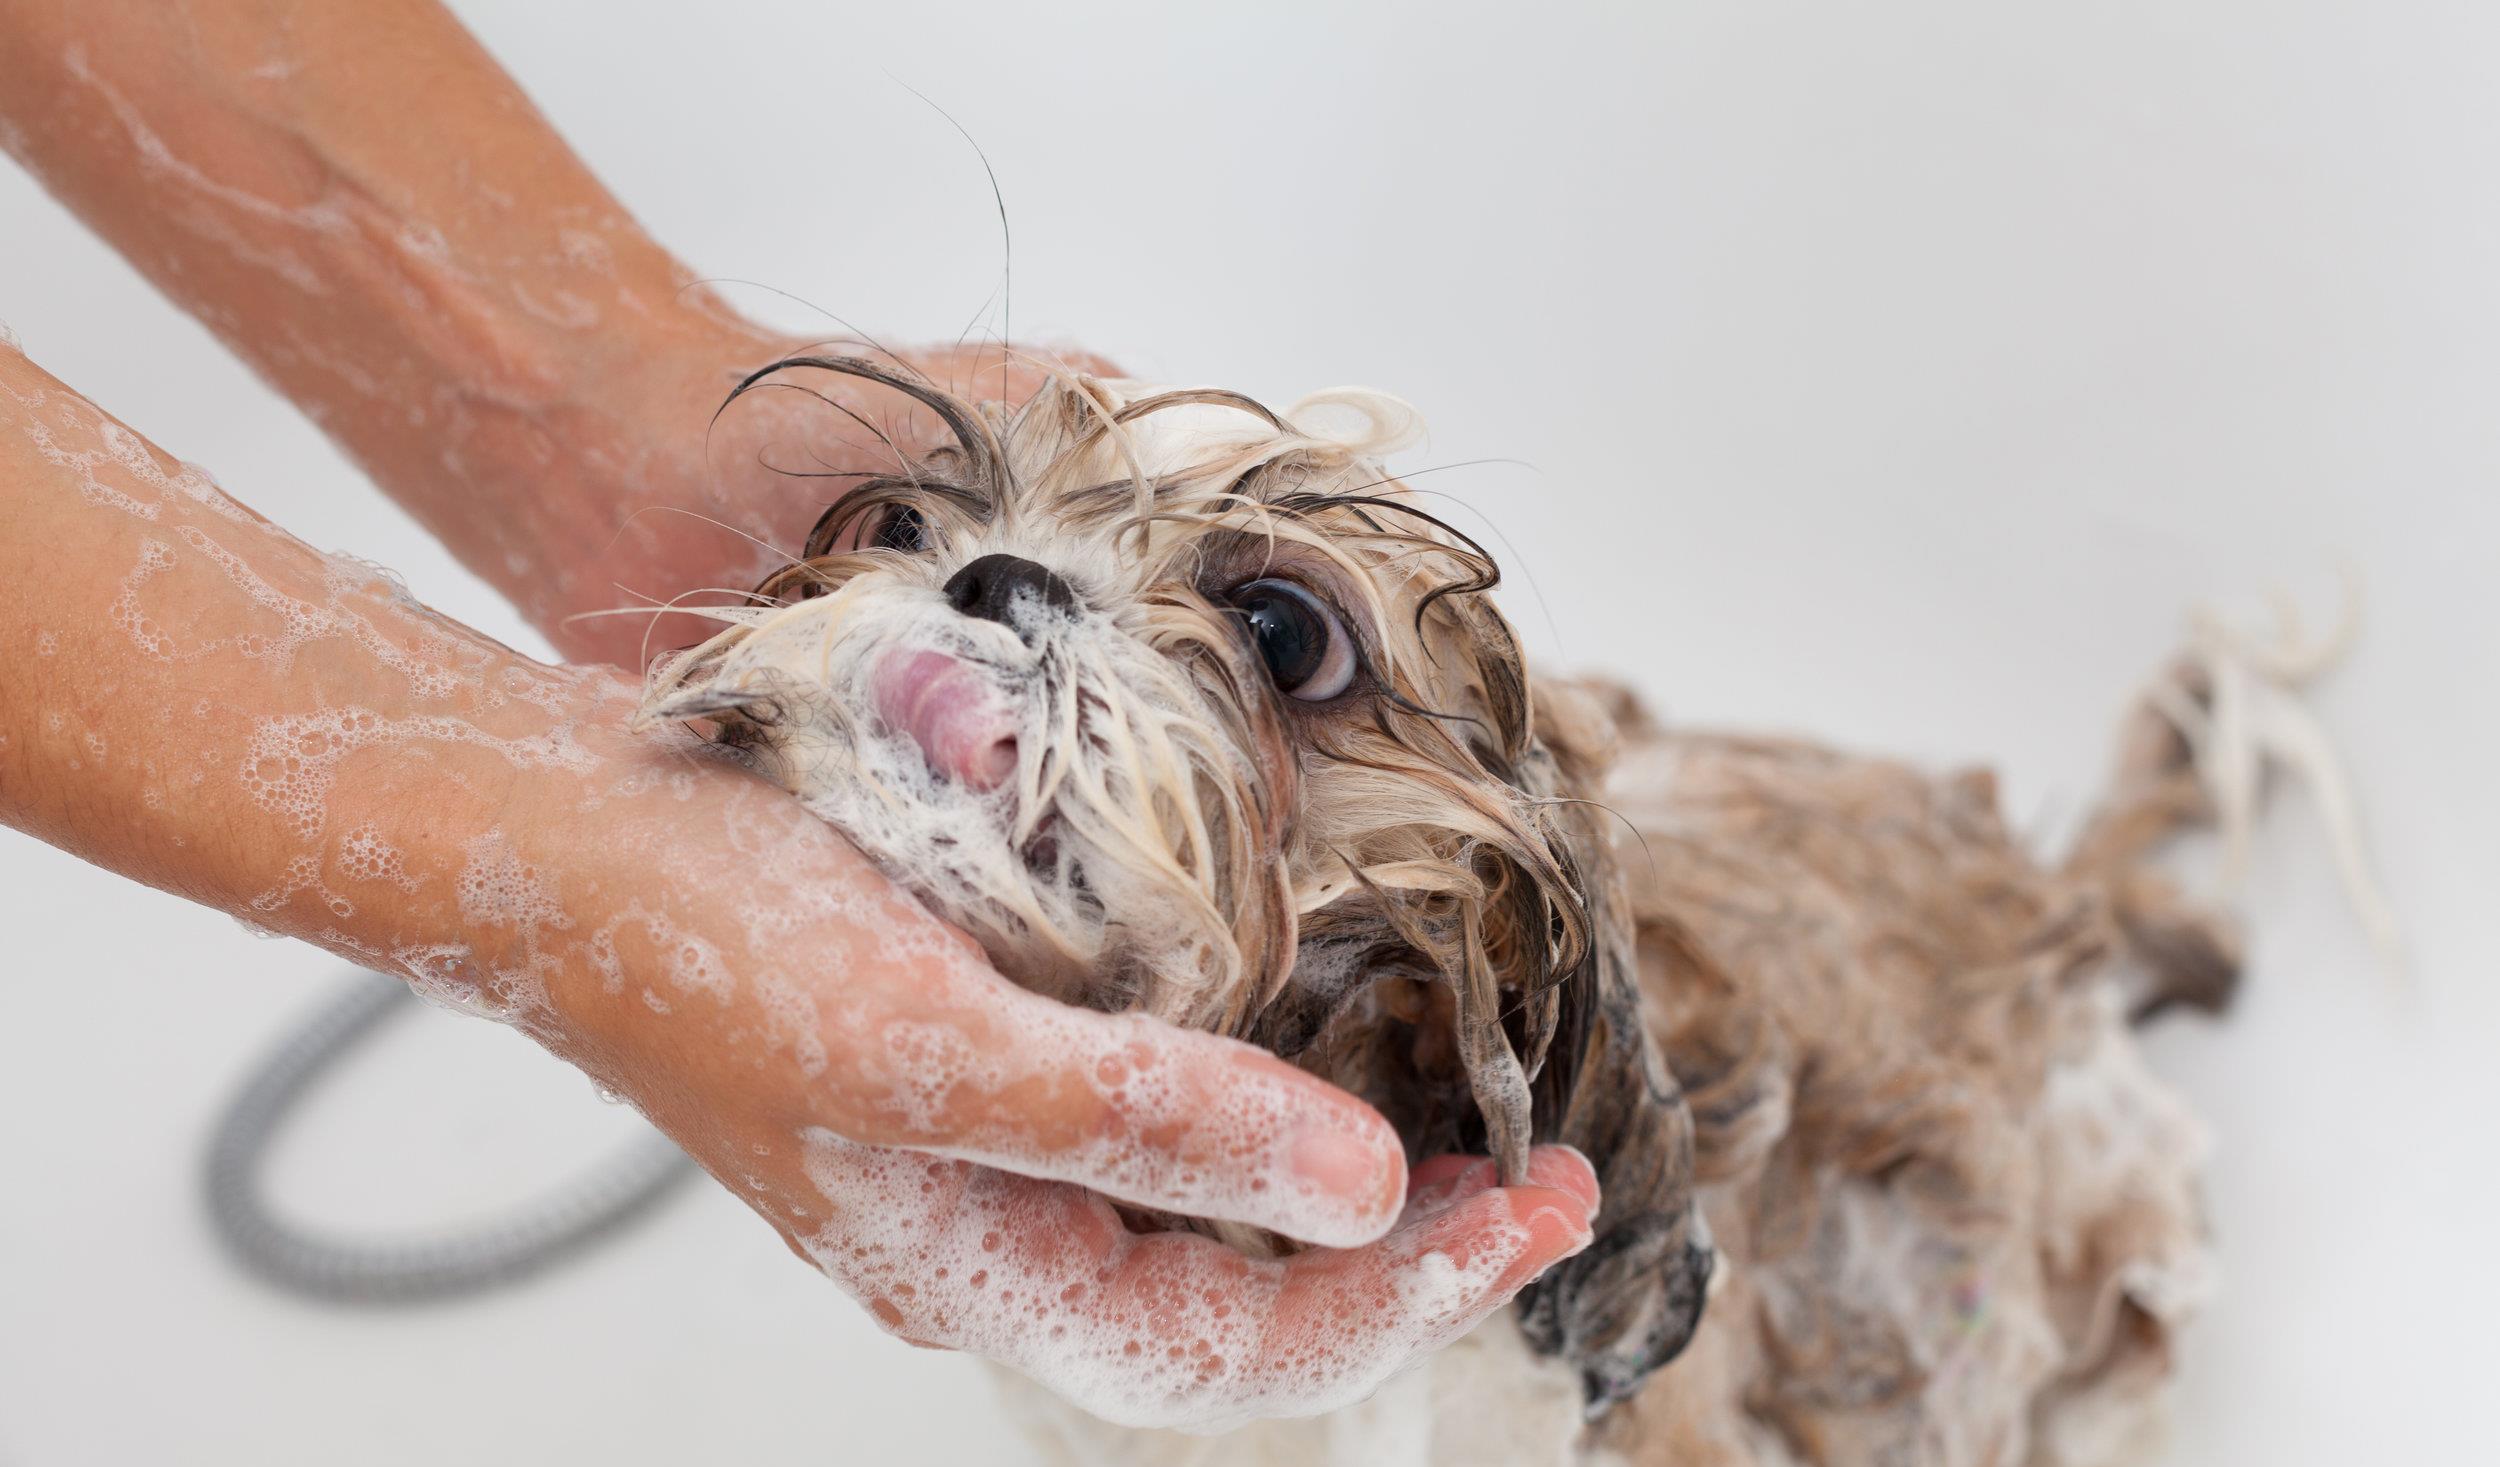 帮狗狗洗澡时,要特别注意这两个部位,尽量别弄湿